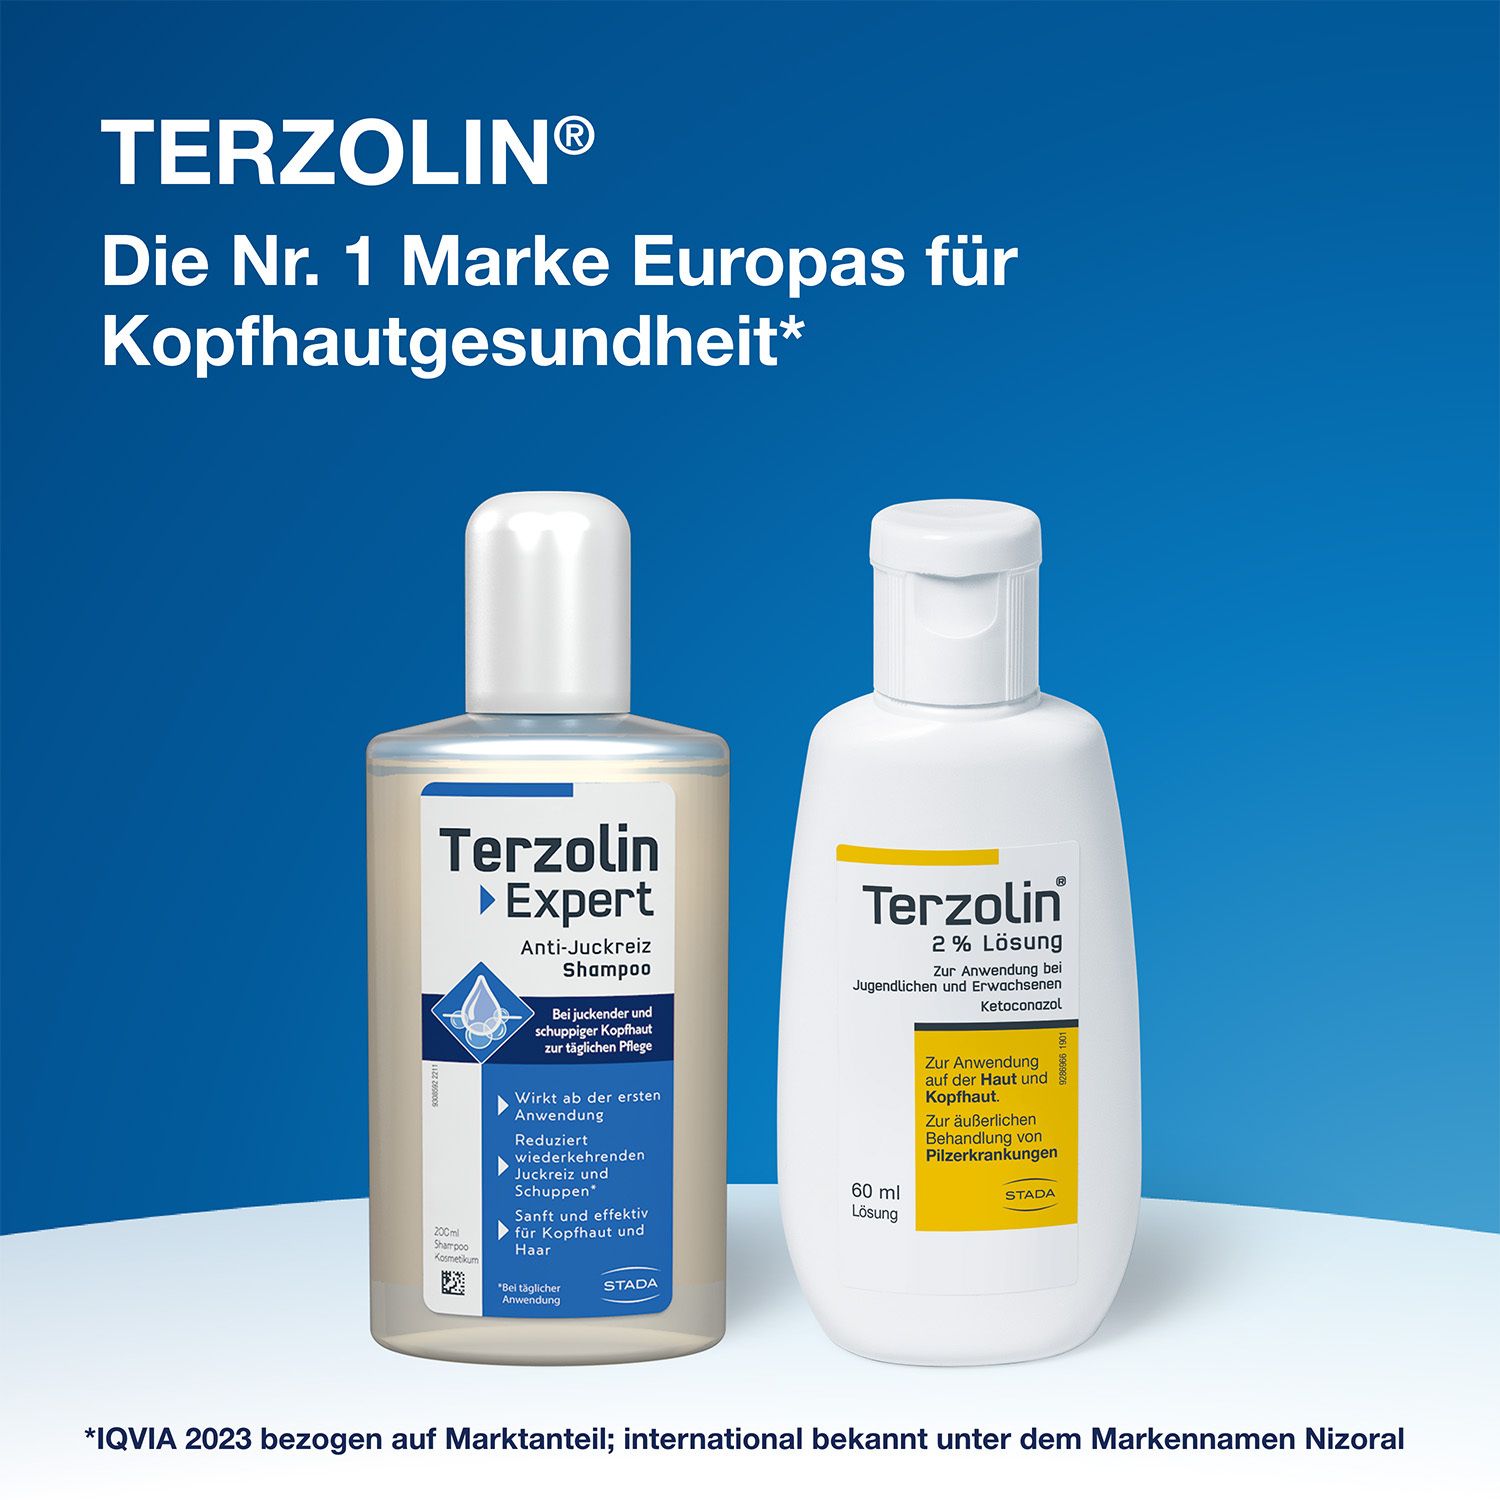 Terzolin® 2 % Lösung gegen Pilzbefall und Schuppen